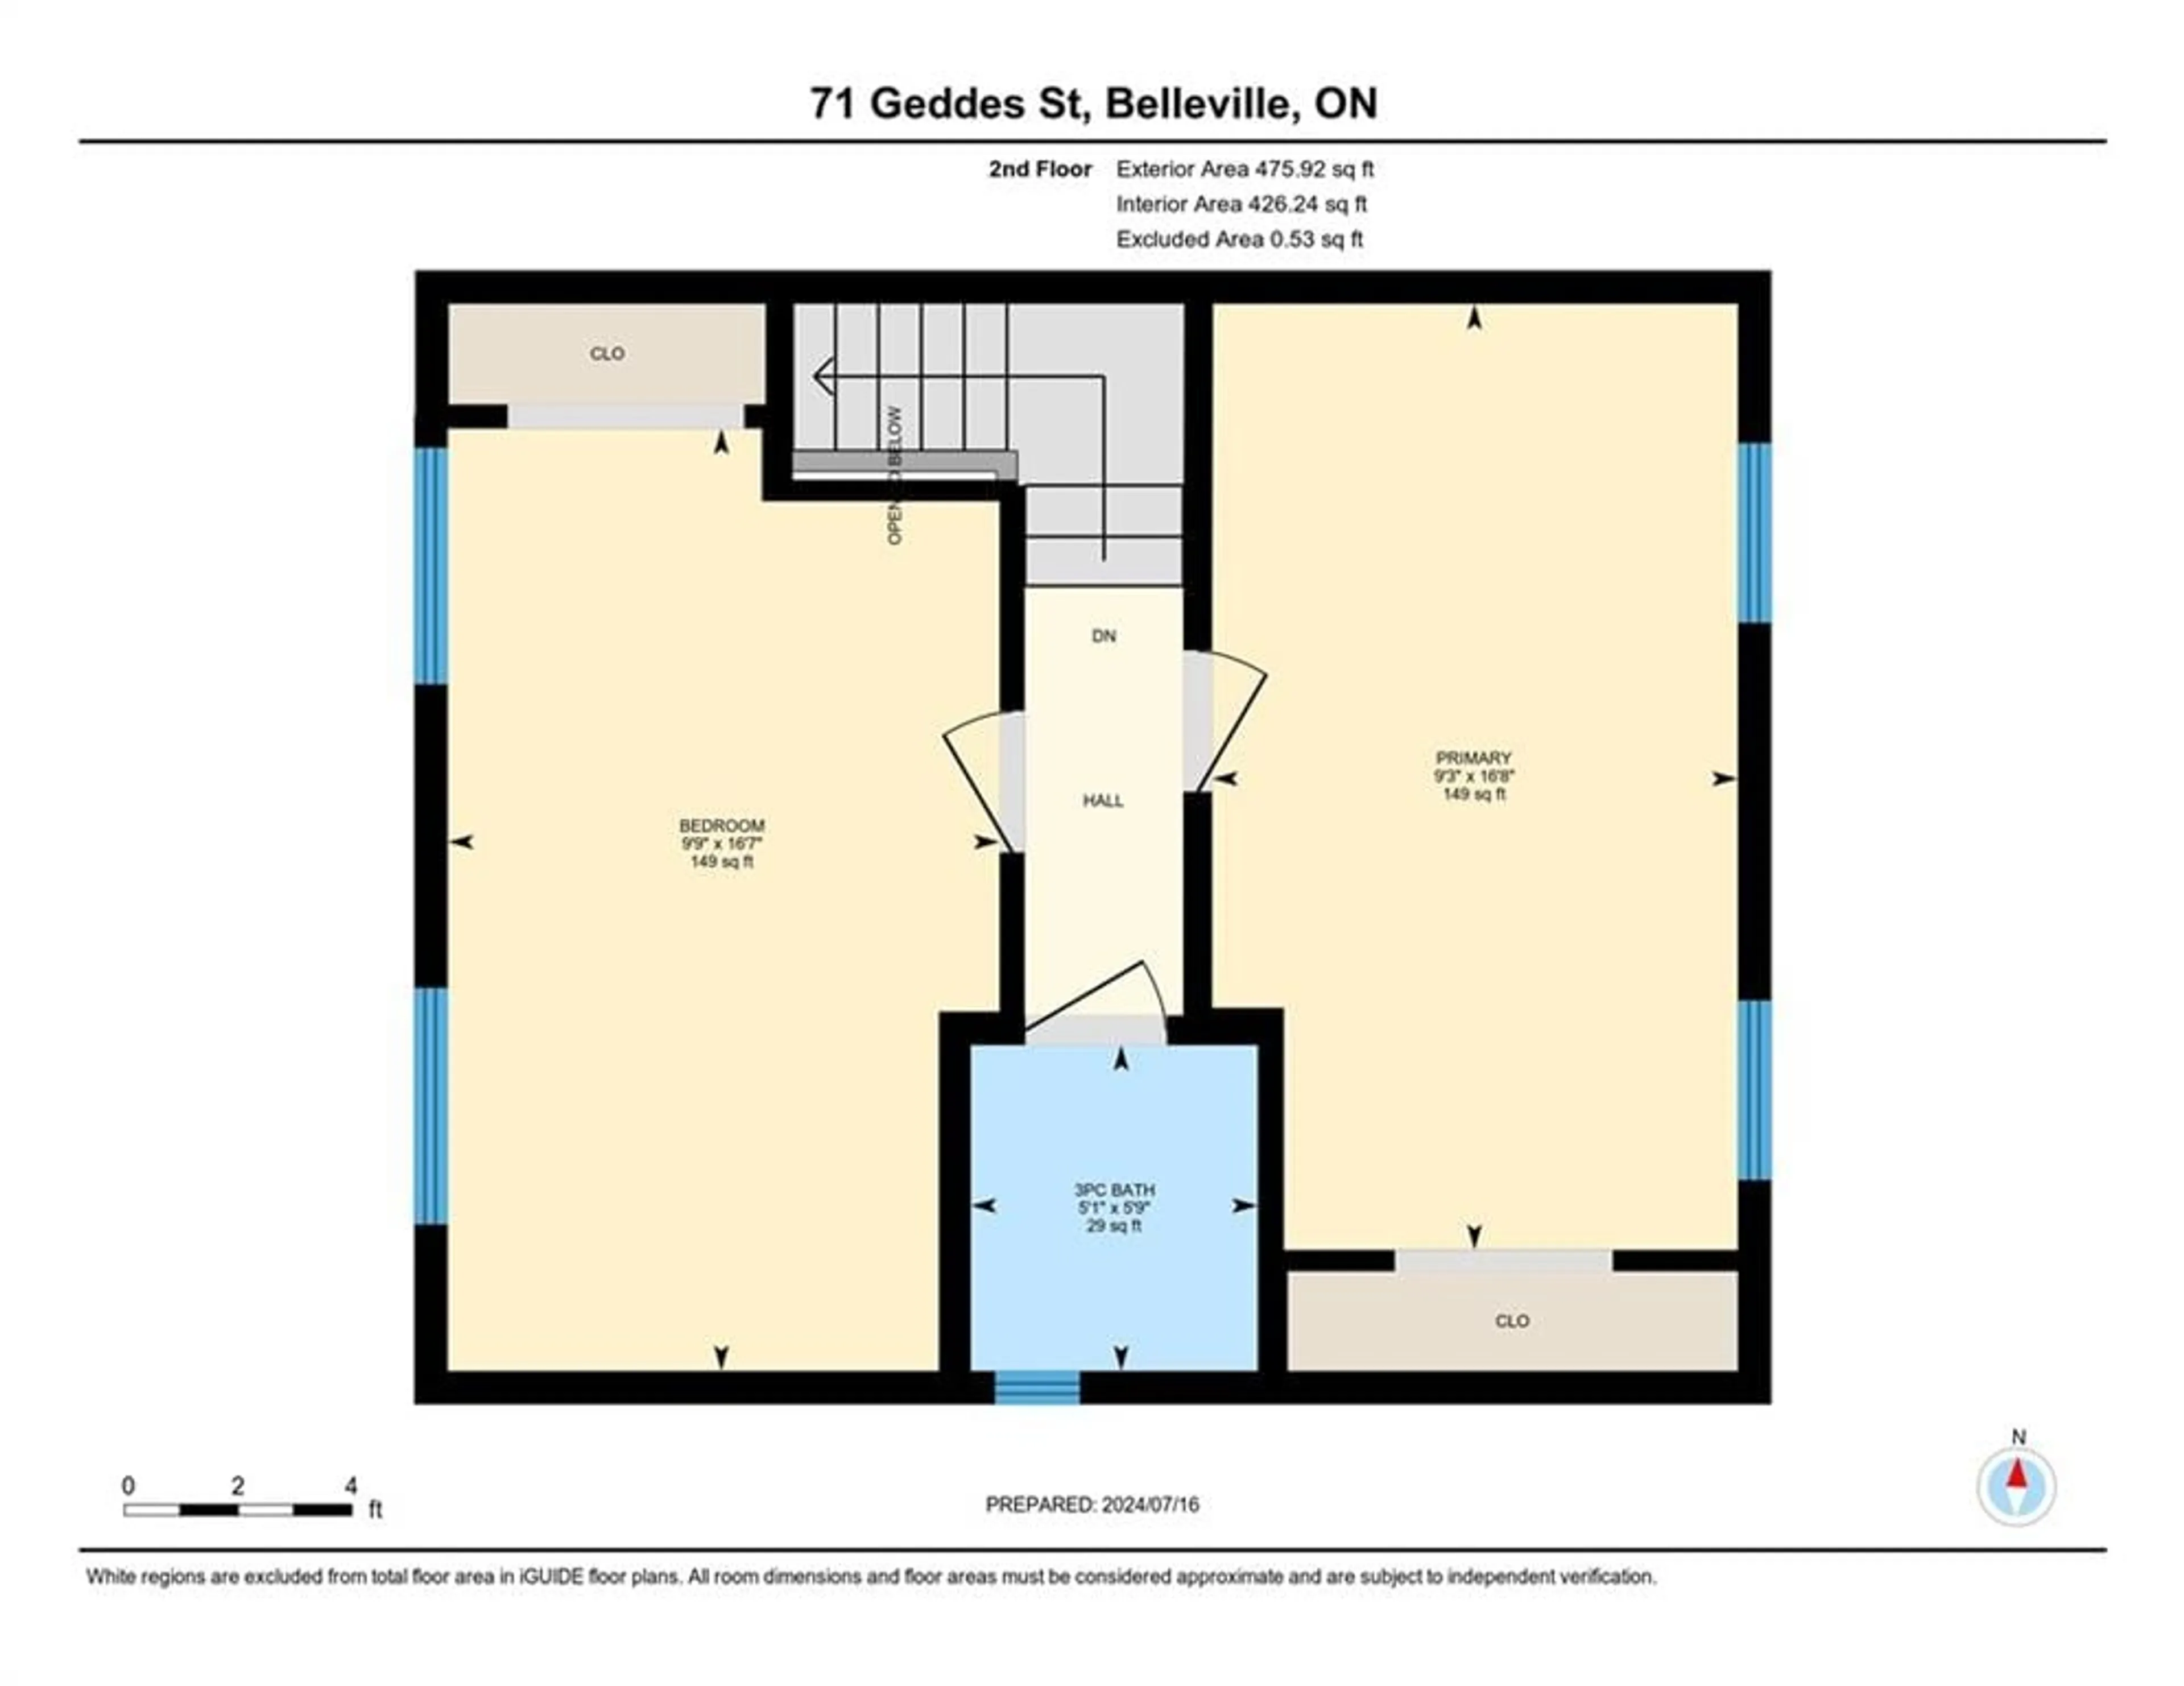 Floor plan for 71 Geddes St, Belleville Ontario K8P 2X7